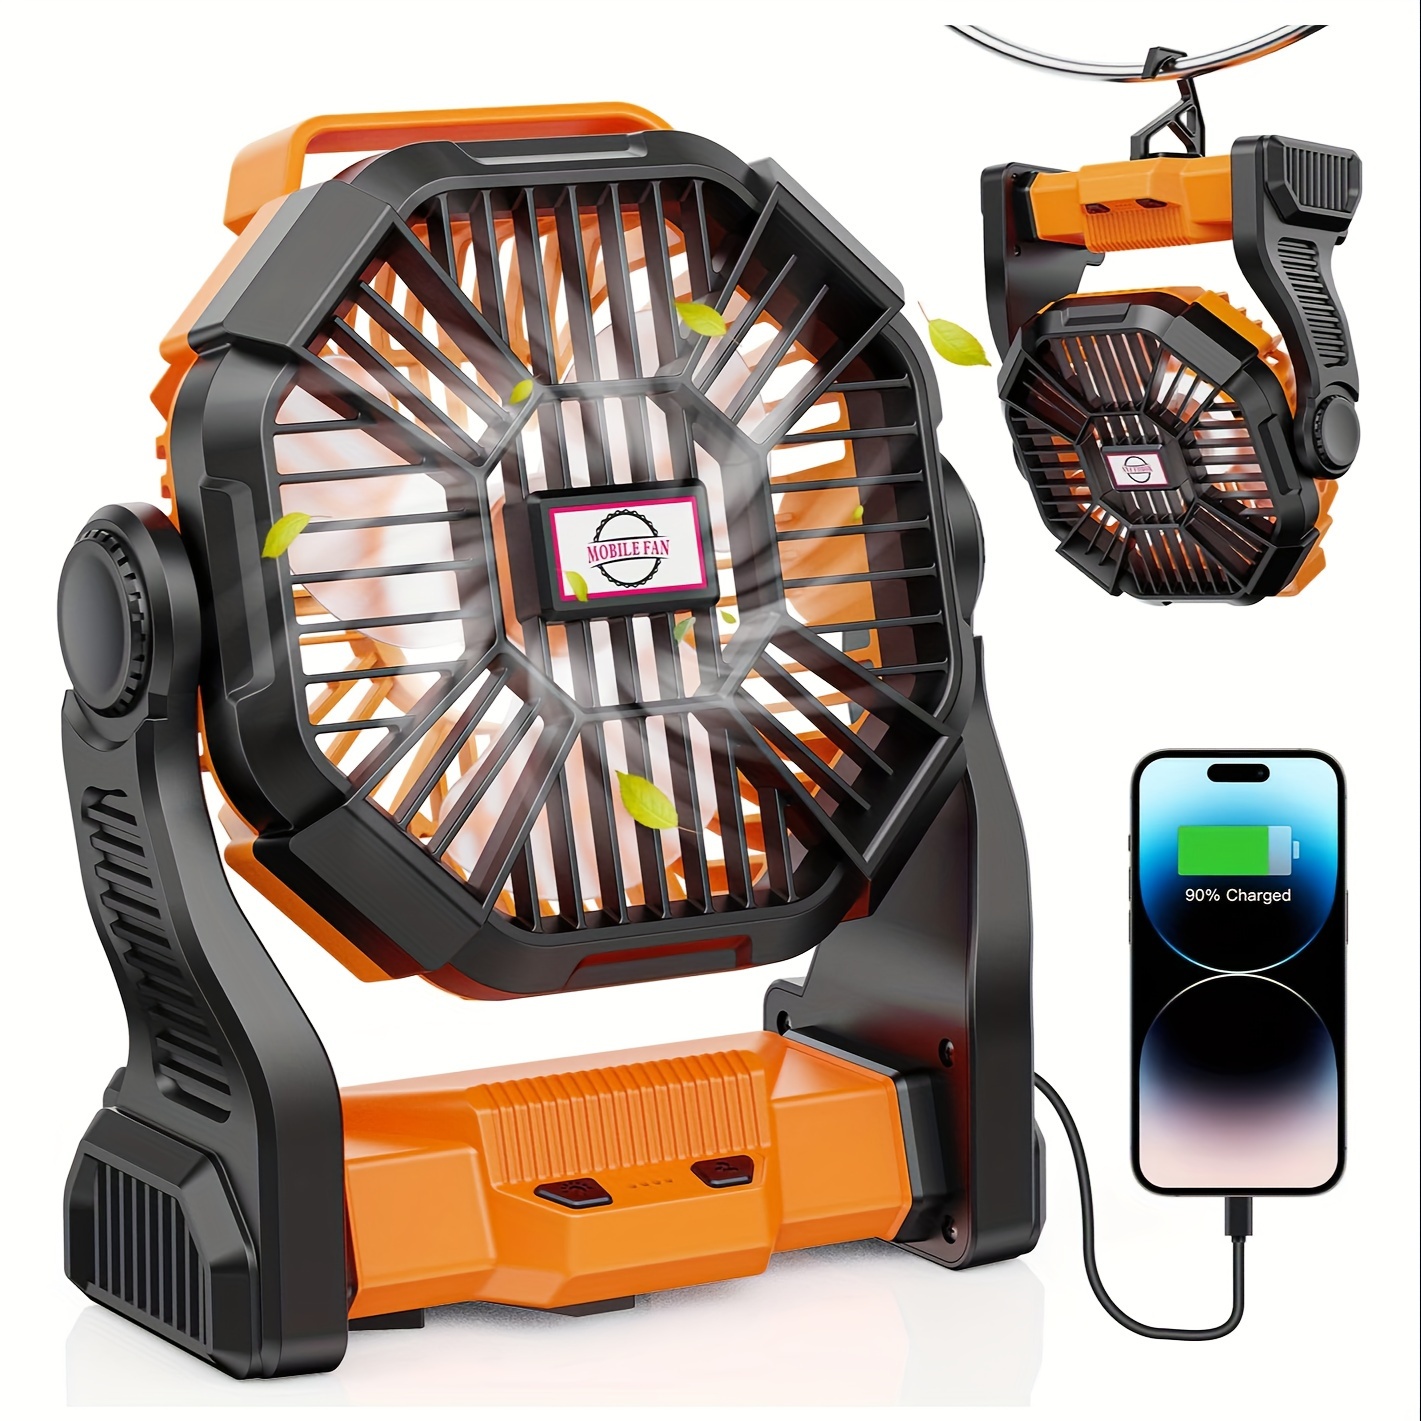 

Outdoor Fan, Rechargeable Camping Fan, Battery Powered Portable Fan, Built-in Led Lights Outdoor Fan, Quiet, Powerful Wind, Portable, Hangable